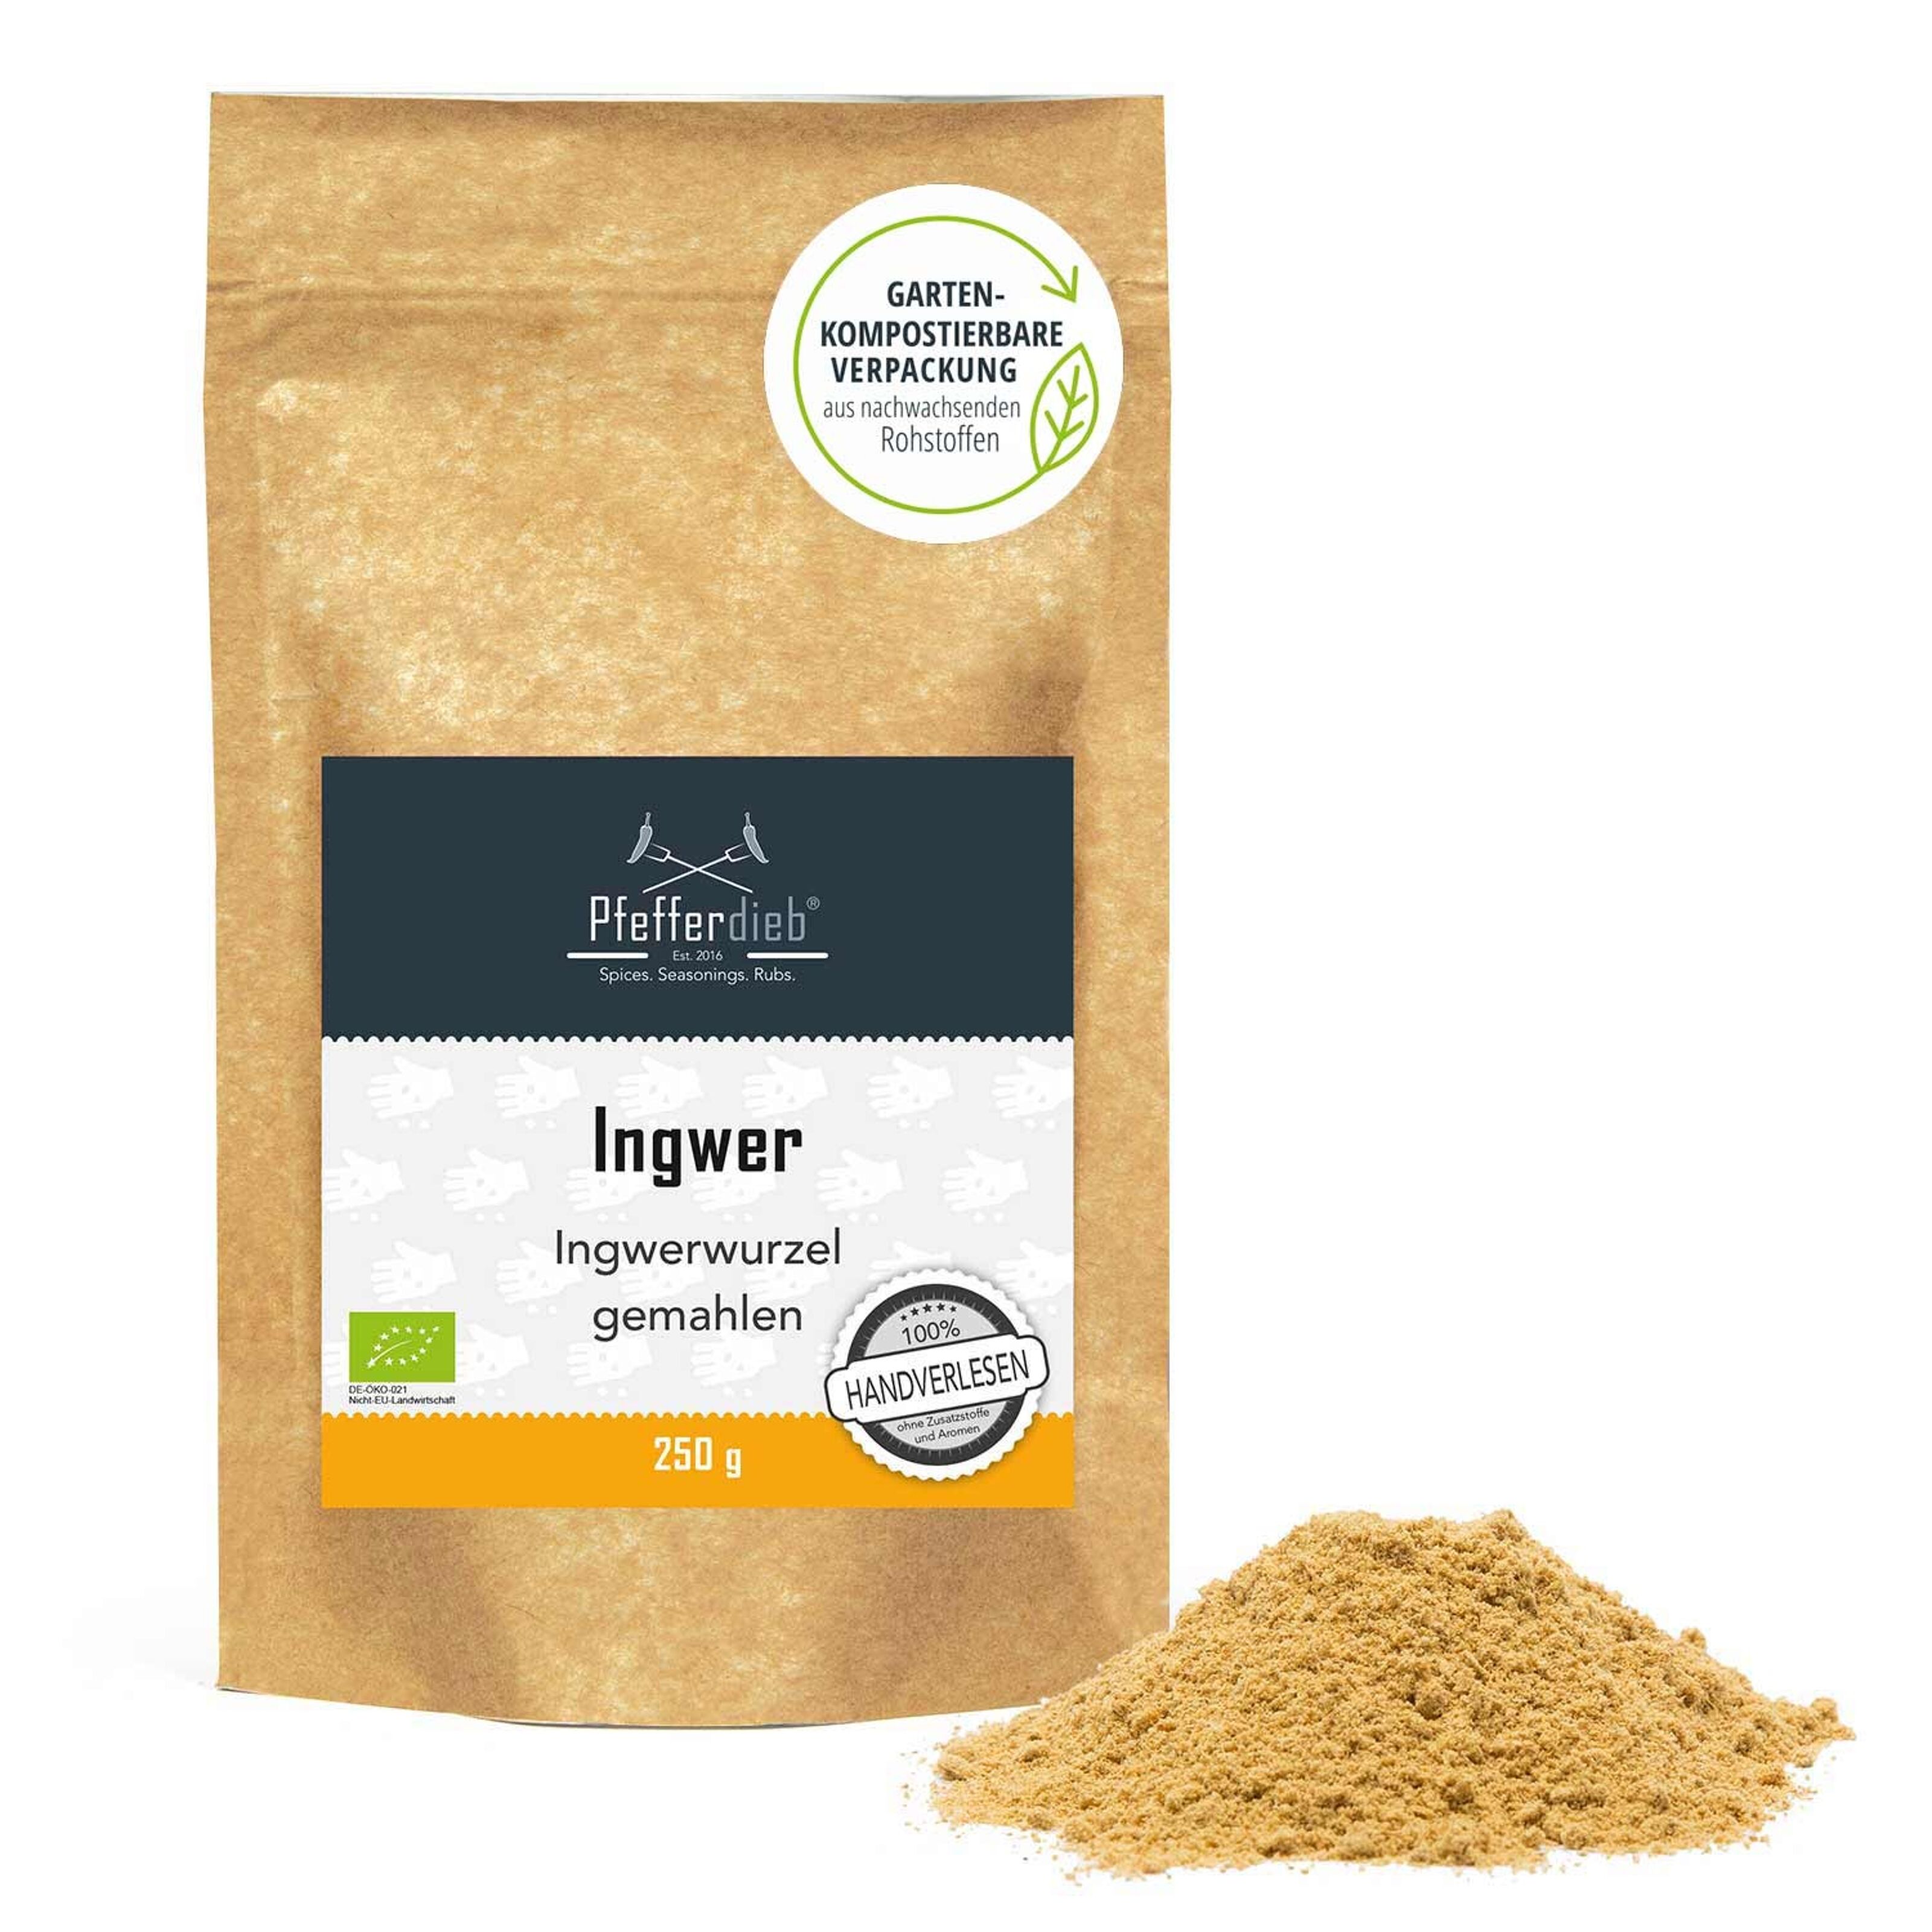 Poudre de gingembre/Ginger powder - Amidjor Agro-business